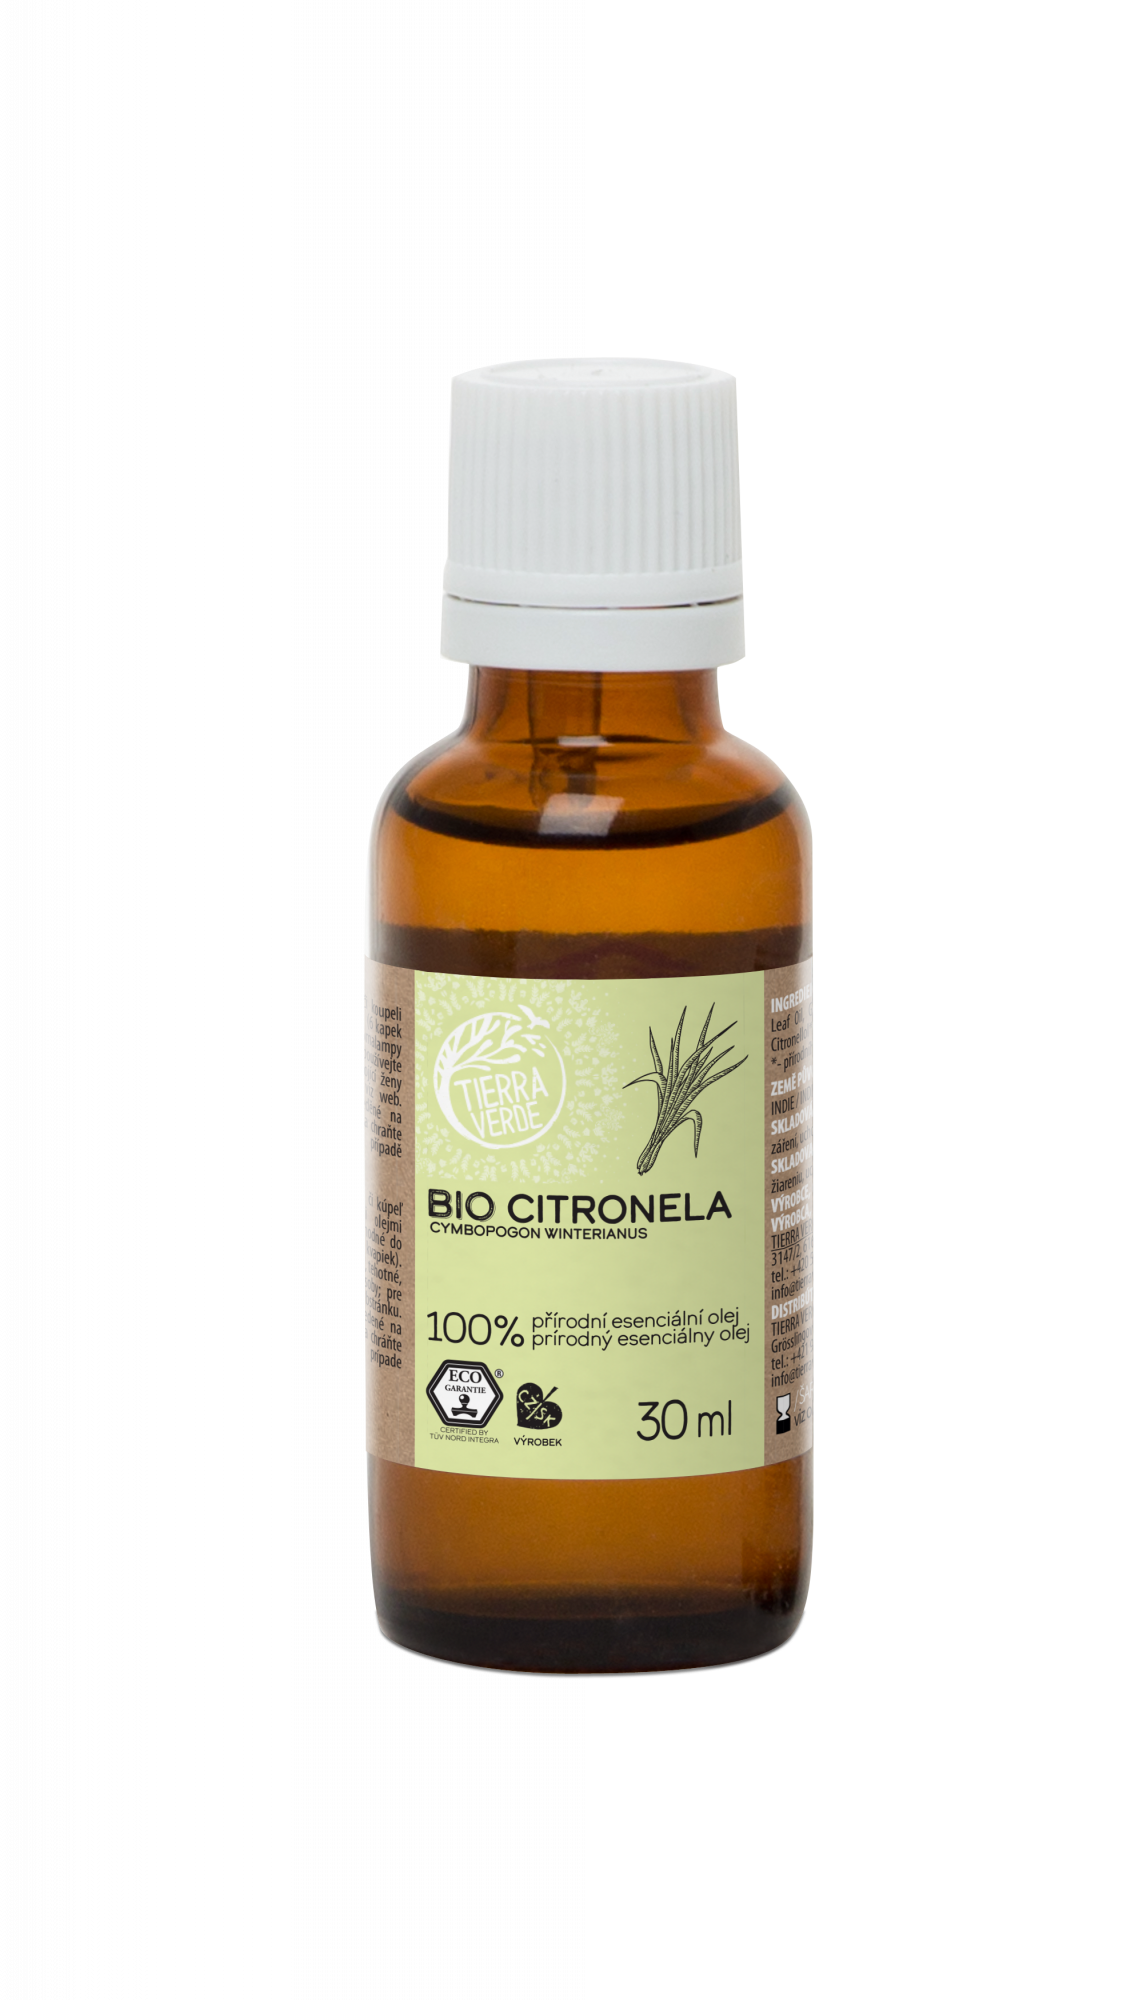 Tierra Verde Esenciální olej Citronela BIO - 30 ml - silné repelentní účinky